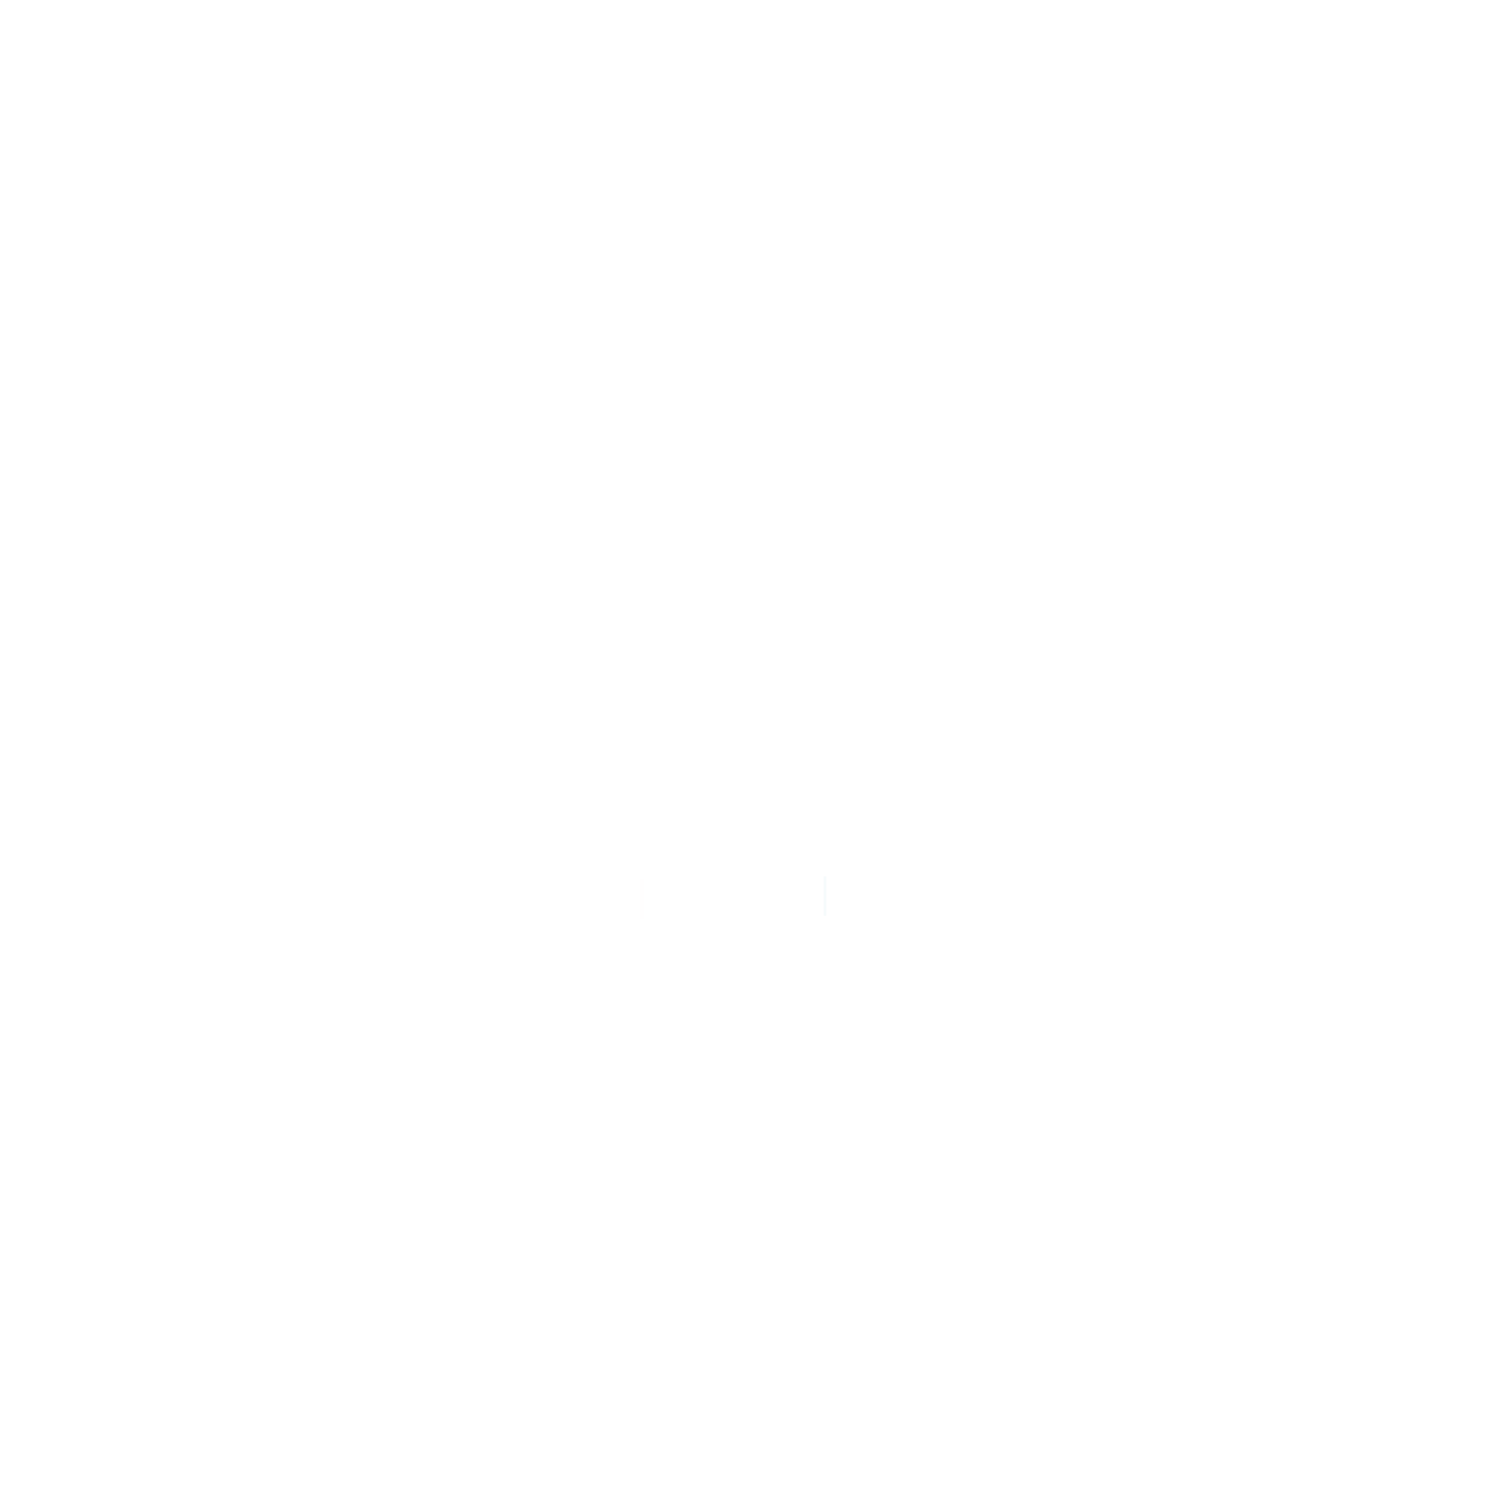 Lavande Face & Body